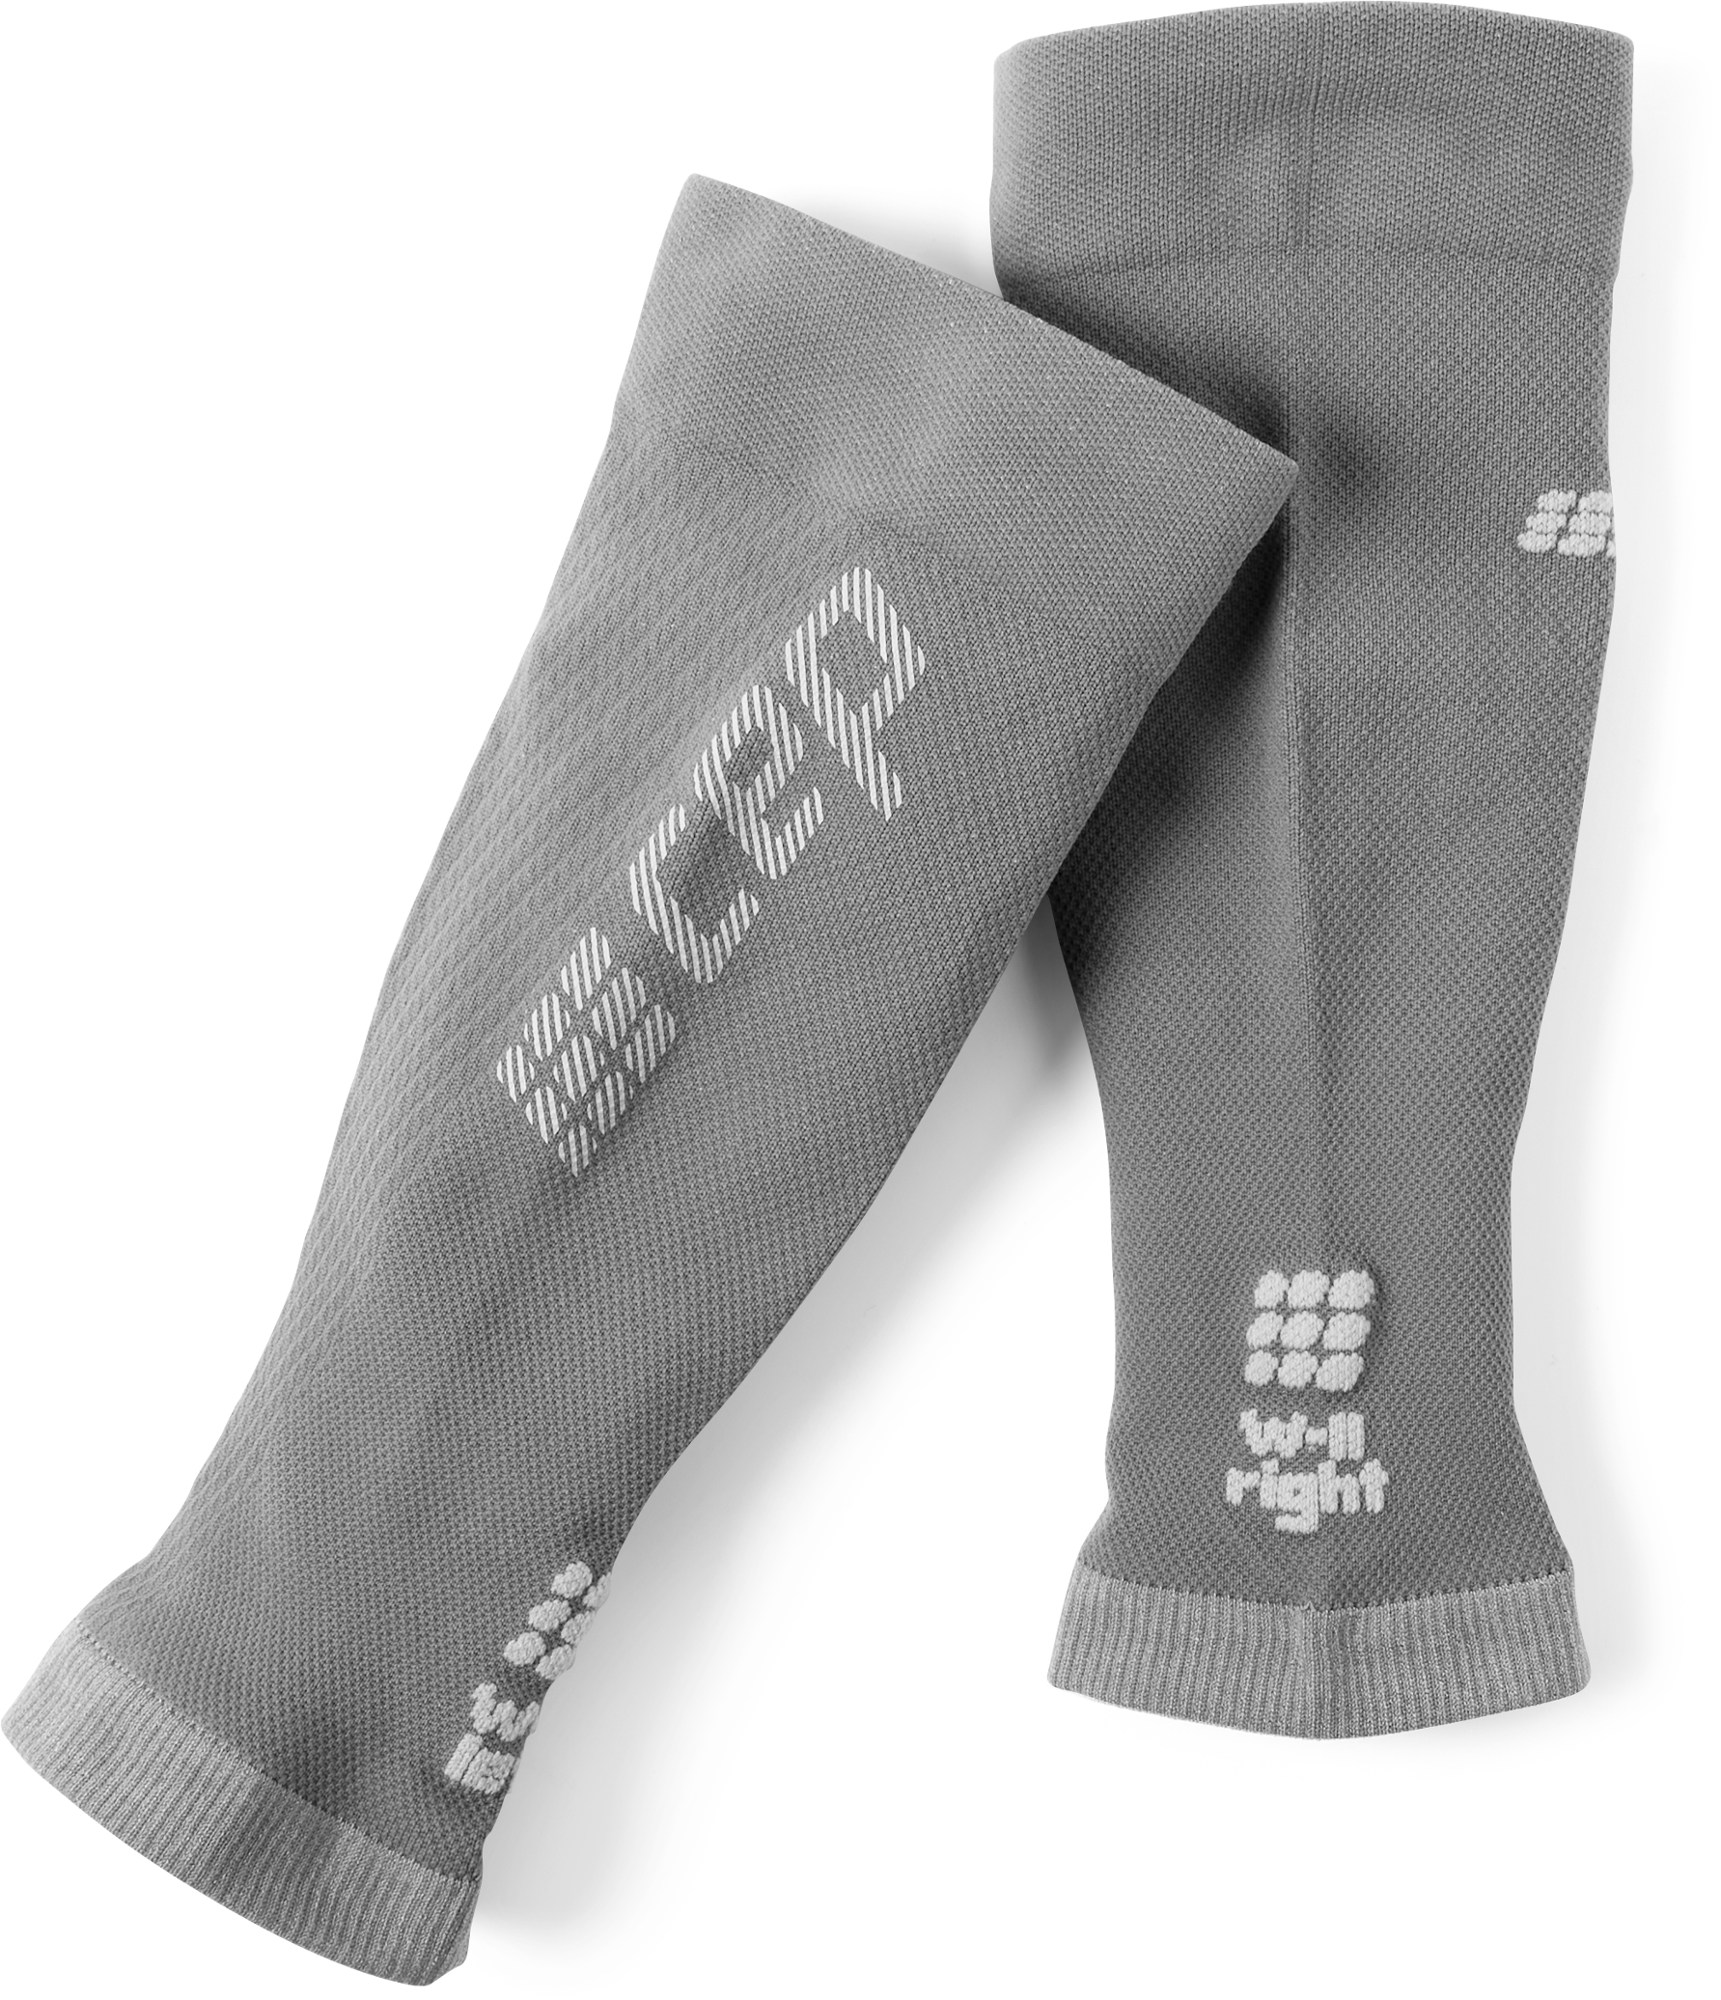 Сверхлегкие рукава до икры – женские CEP, серый 1 шт спортивный компрессионный рукав до икры поддержка голени защита ног защитный носок для баскетбола бега велоспорта путешествий